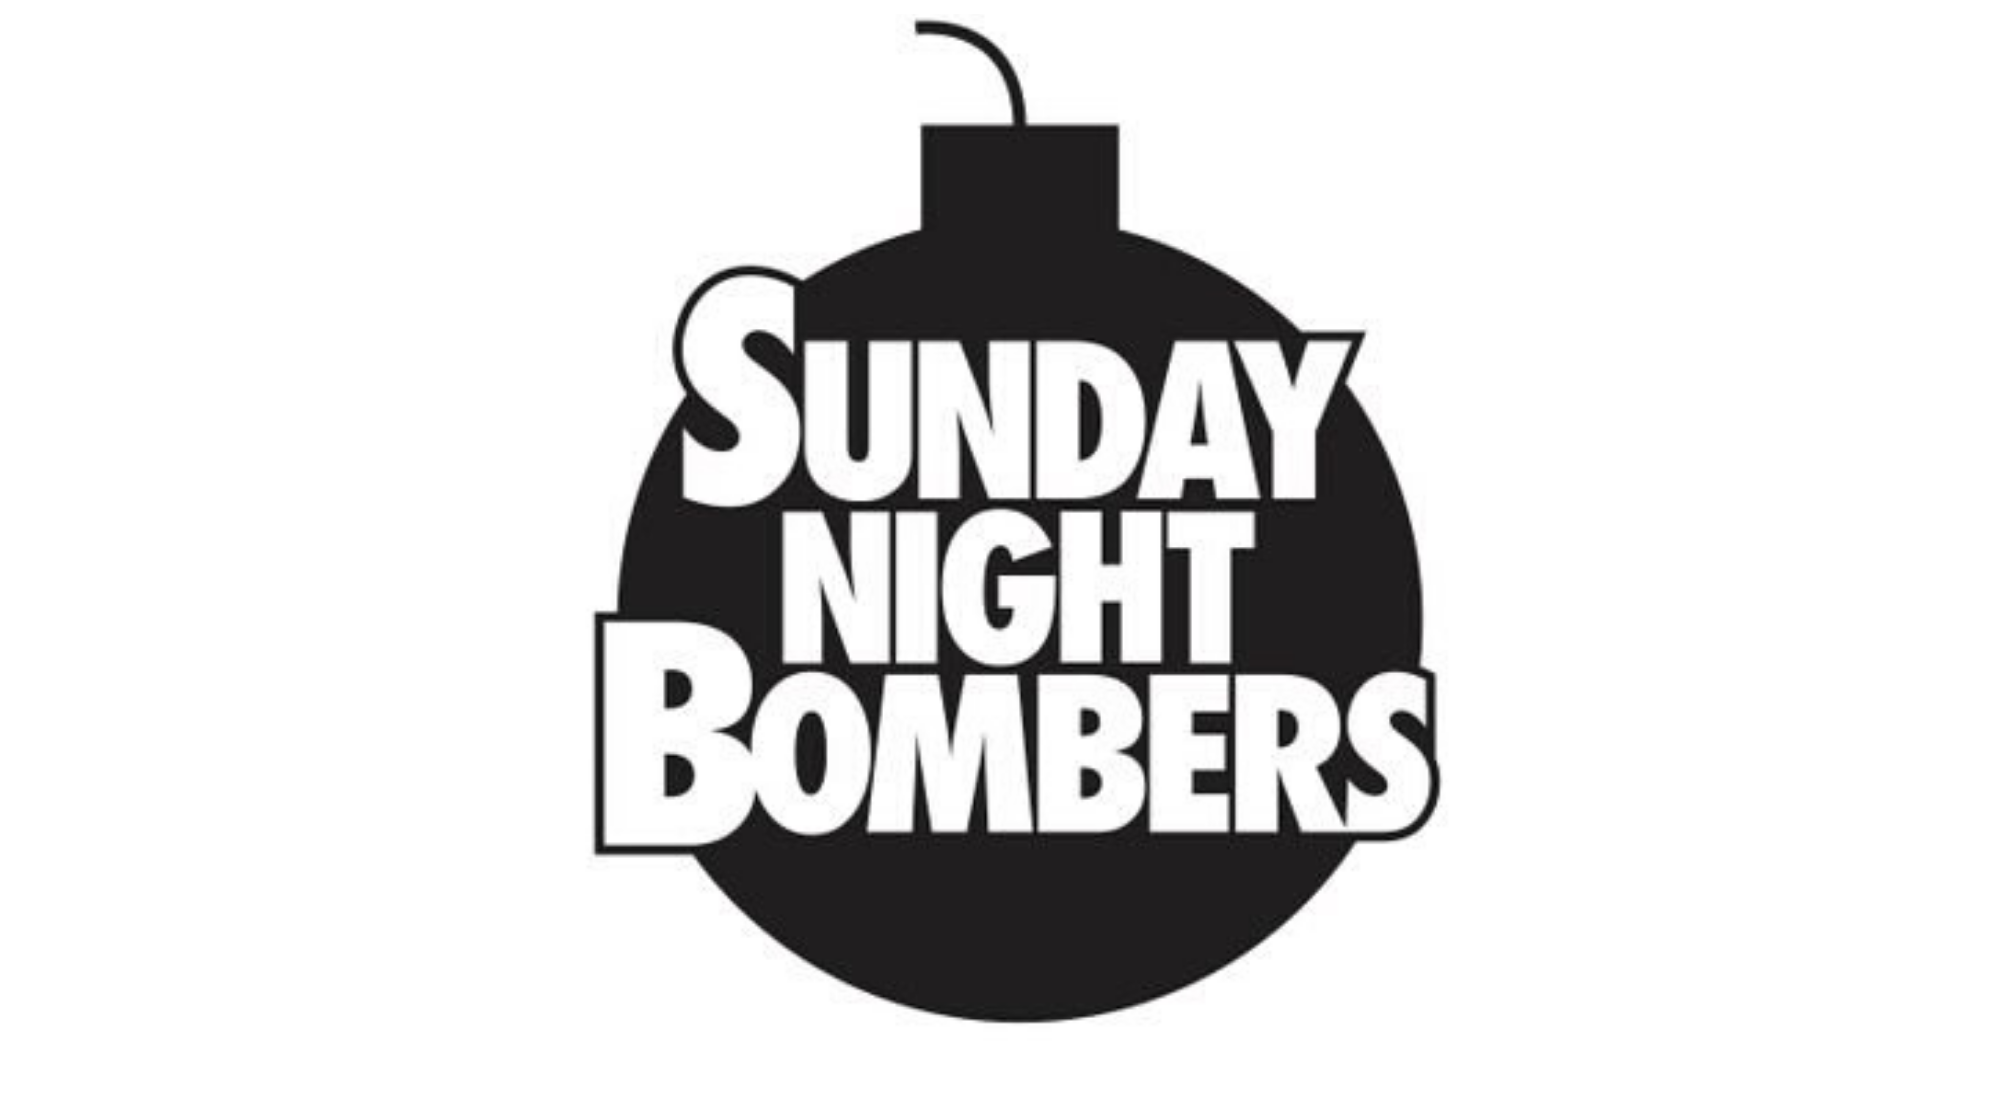 The Sunday Night Bombers